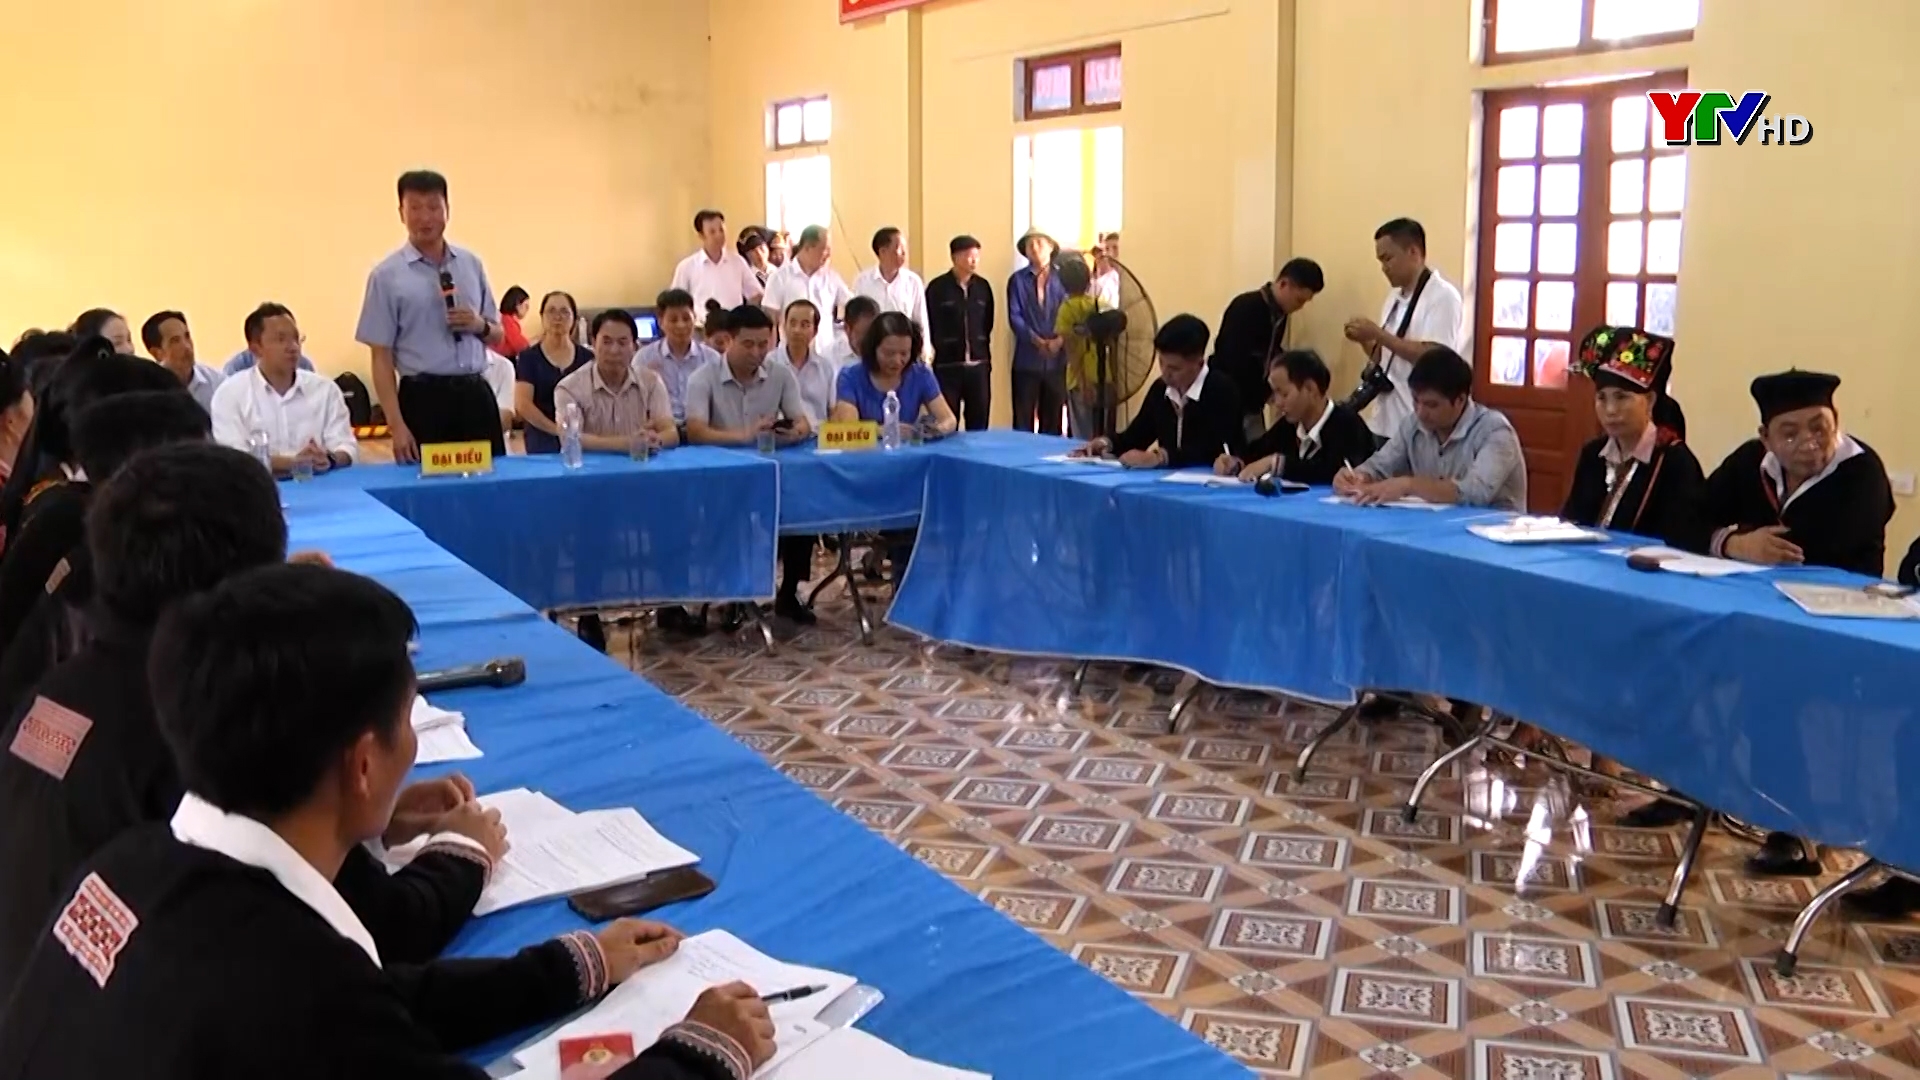 Đồng chí Chủ tịch UBND tỉnh Trần Huy Tuấn dự sinh hoạt tại chi bộ thôn Khe Bành, xã Châu Quế Hạ, huyện Văn Yên